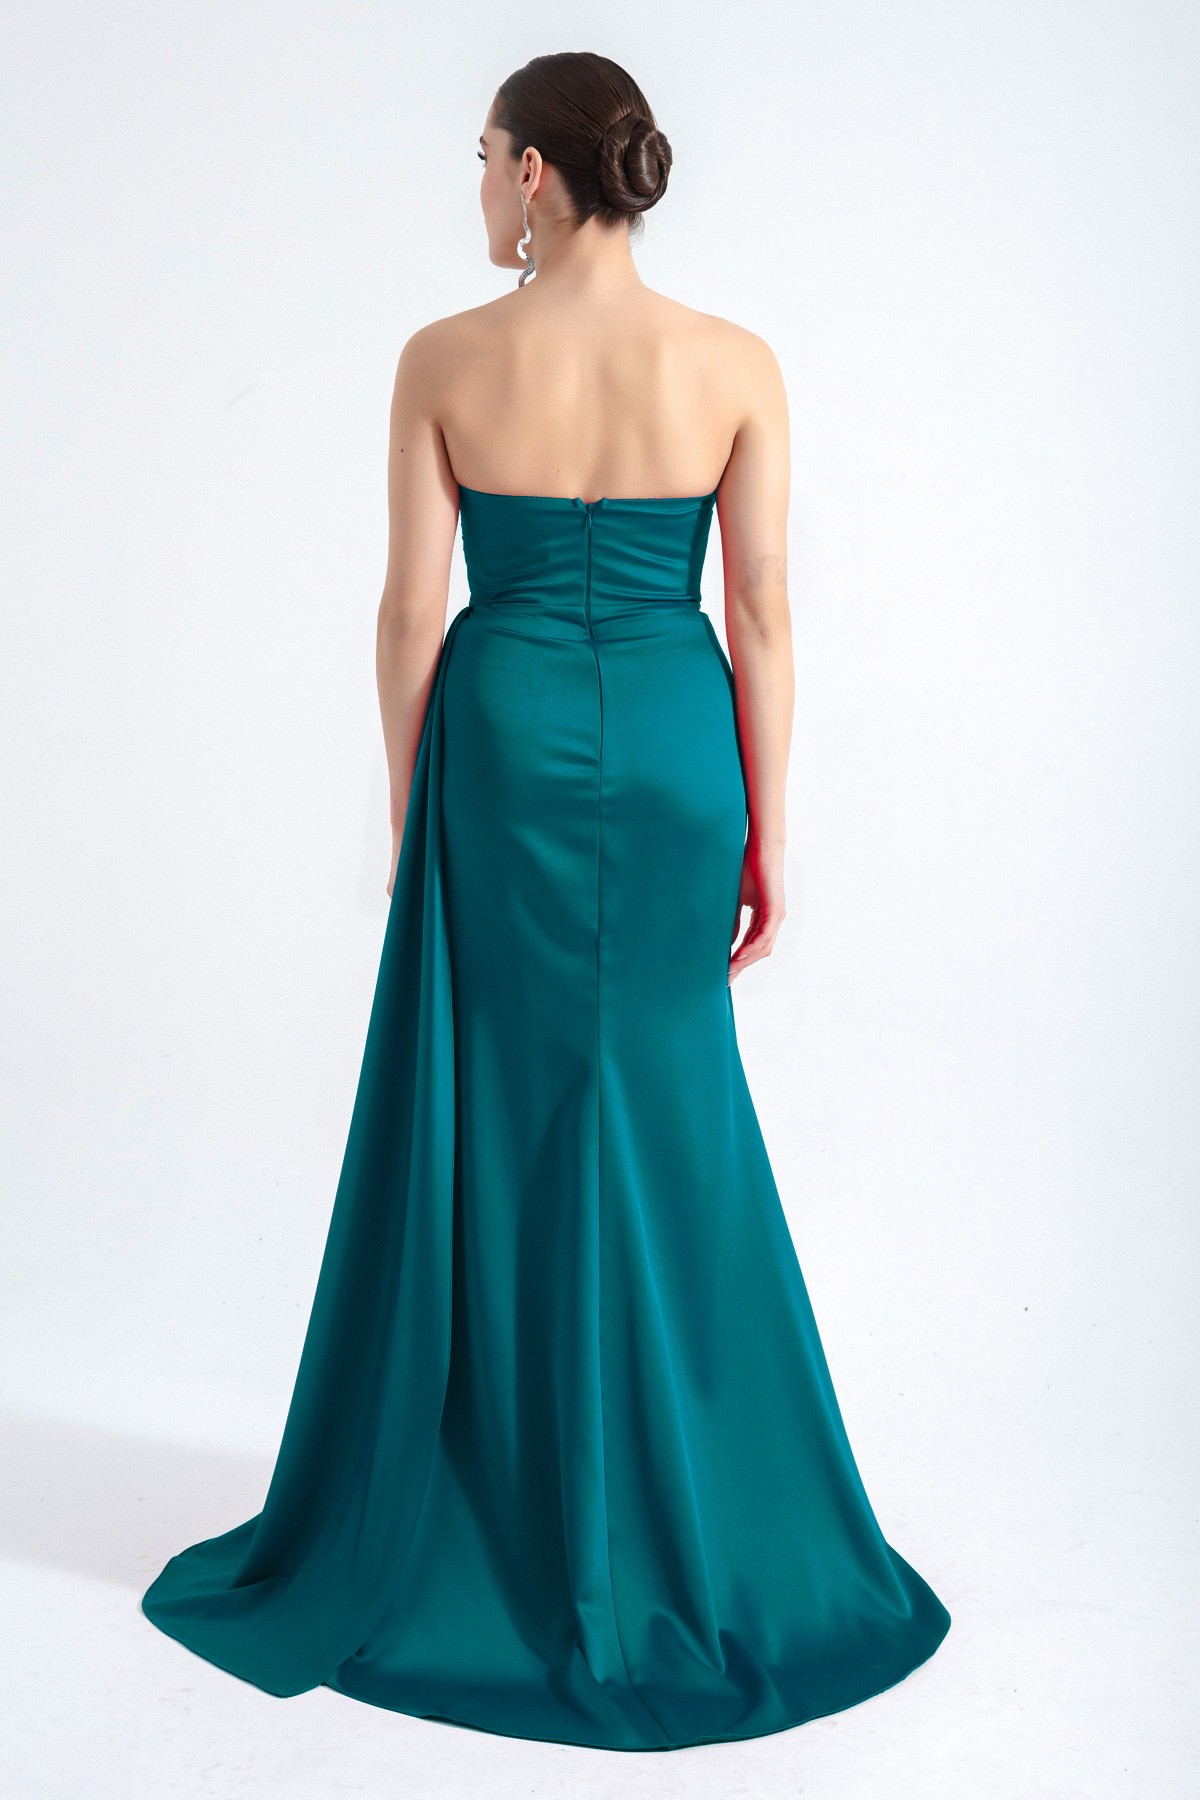 Kadın Straplez Uzun Abiye Elbise - Zümrüt Yeşili